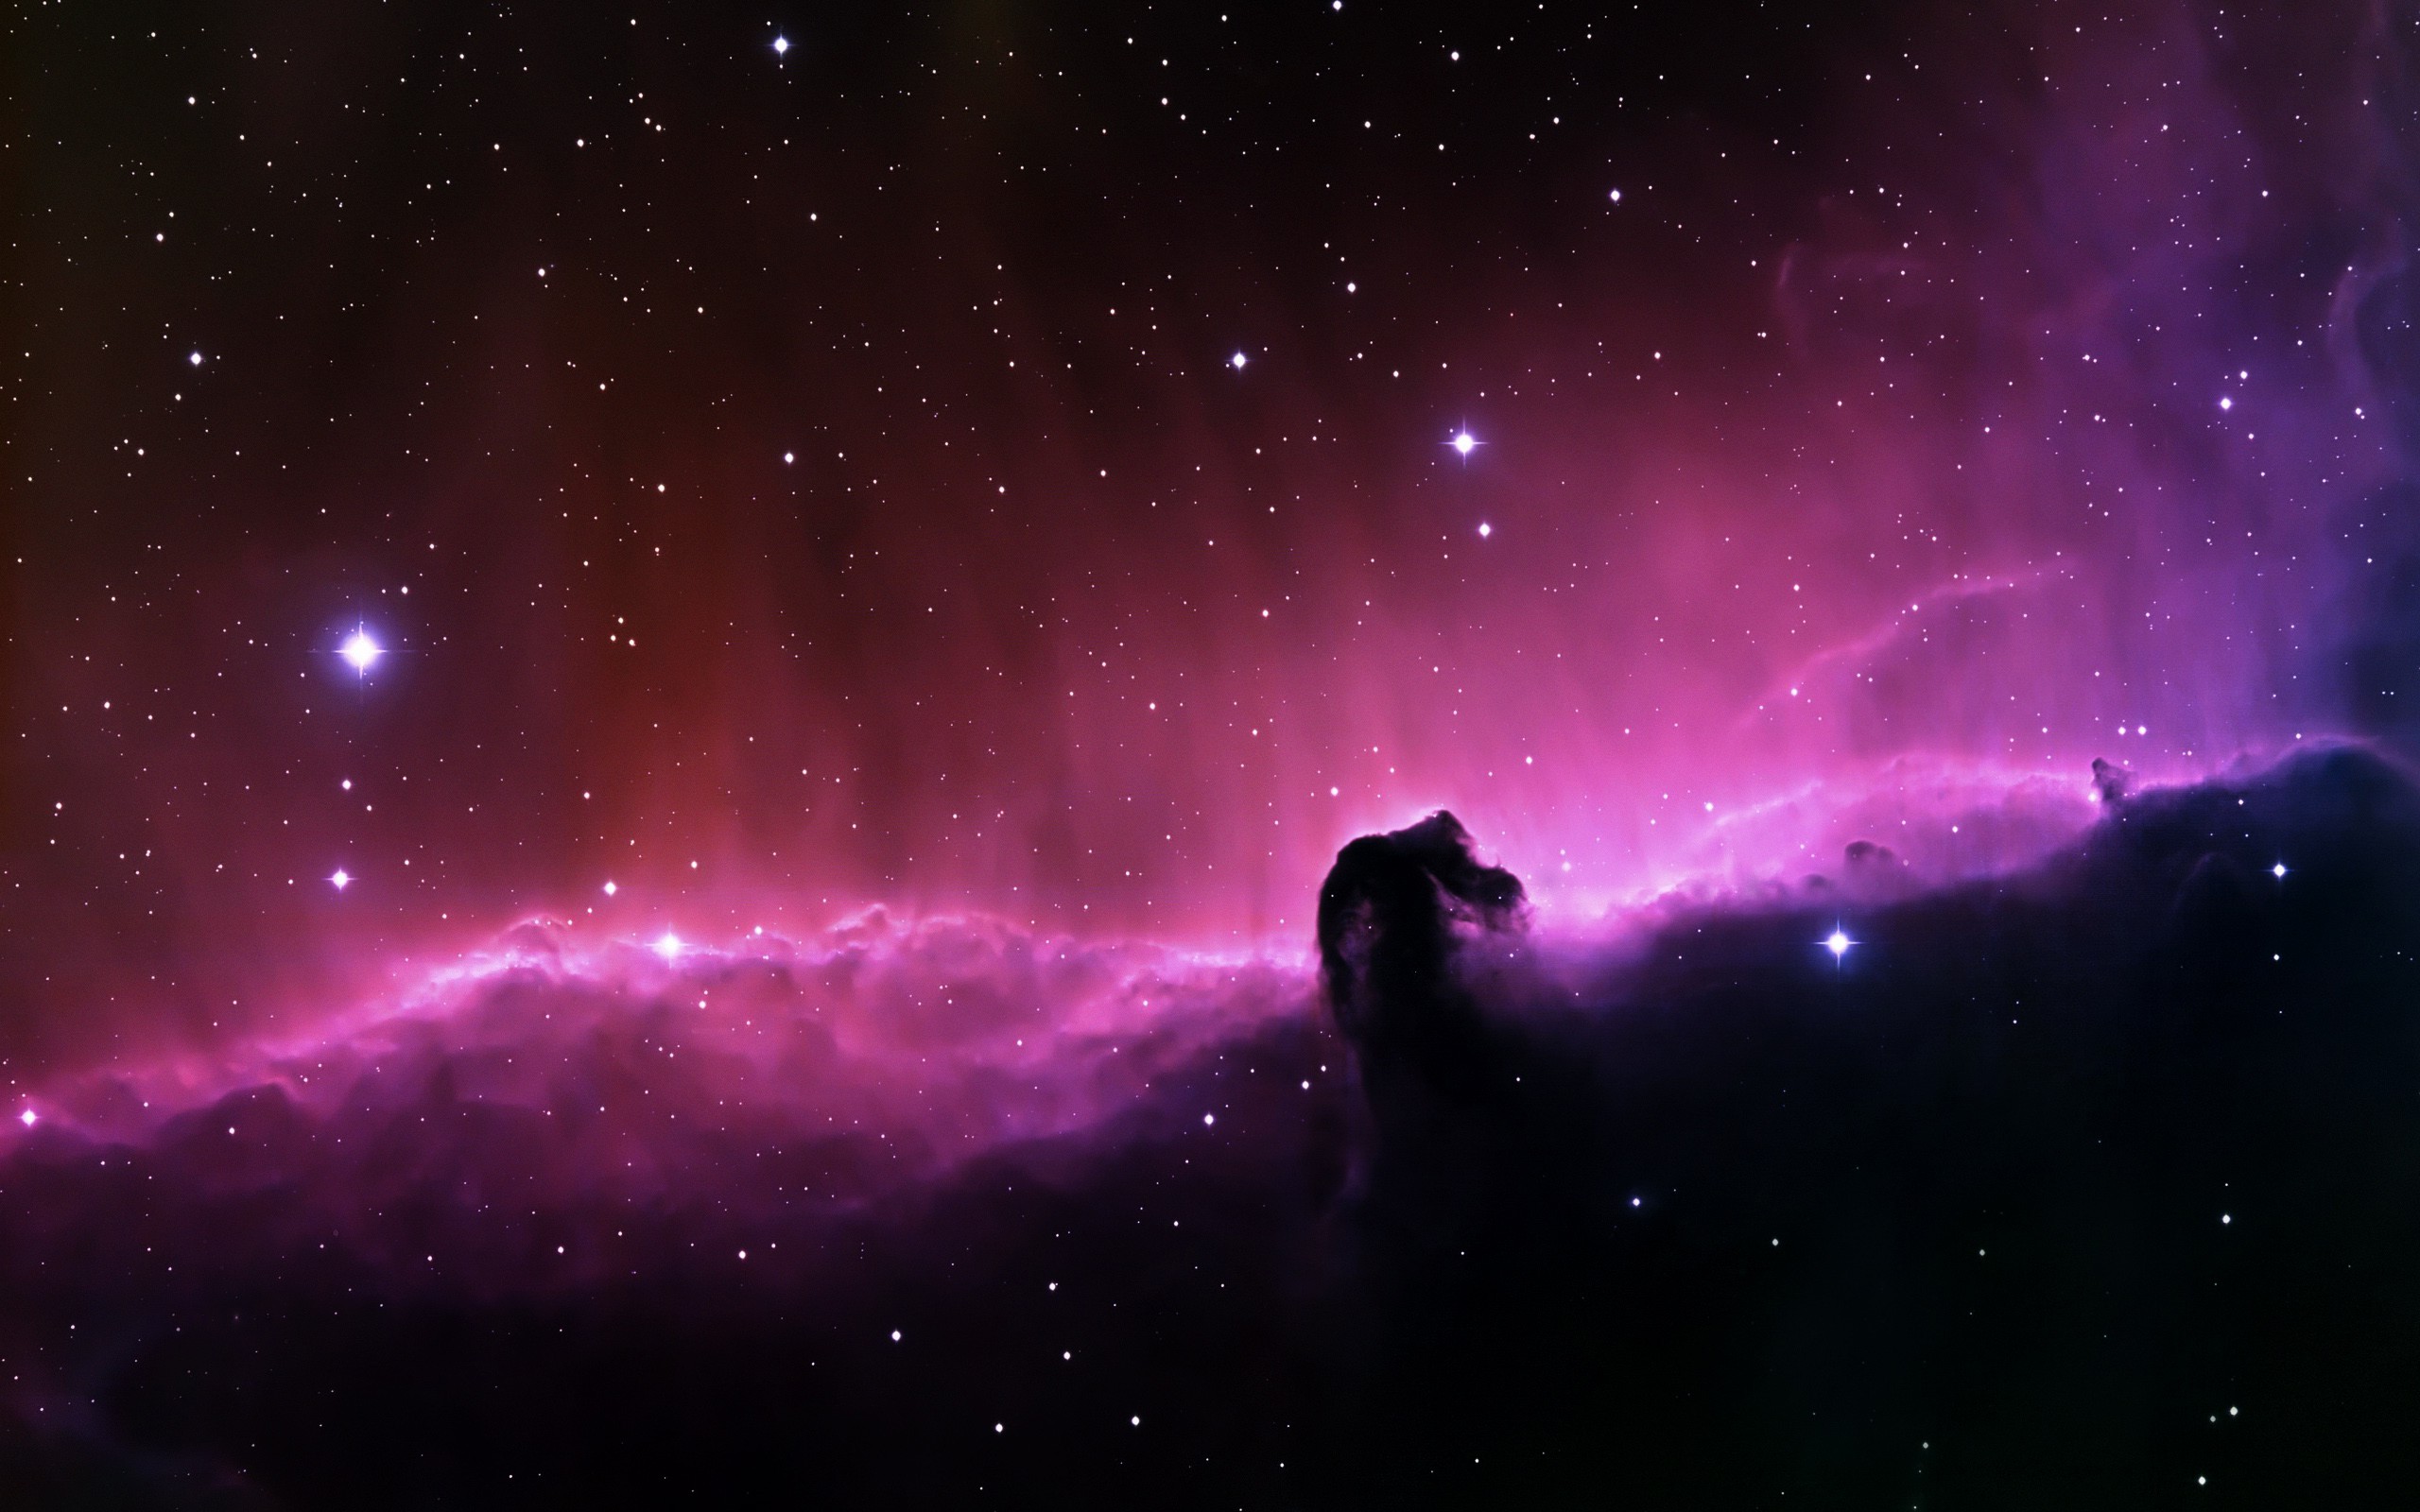 Обои Туманность лошадь картинки на рабочий стол на тему Космос - скачать бесплатно